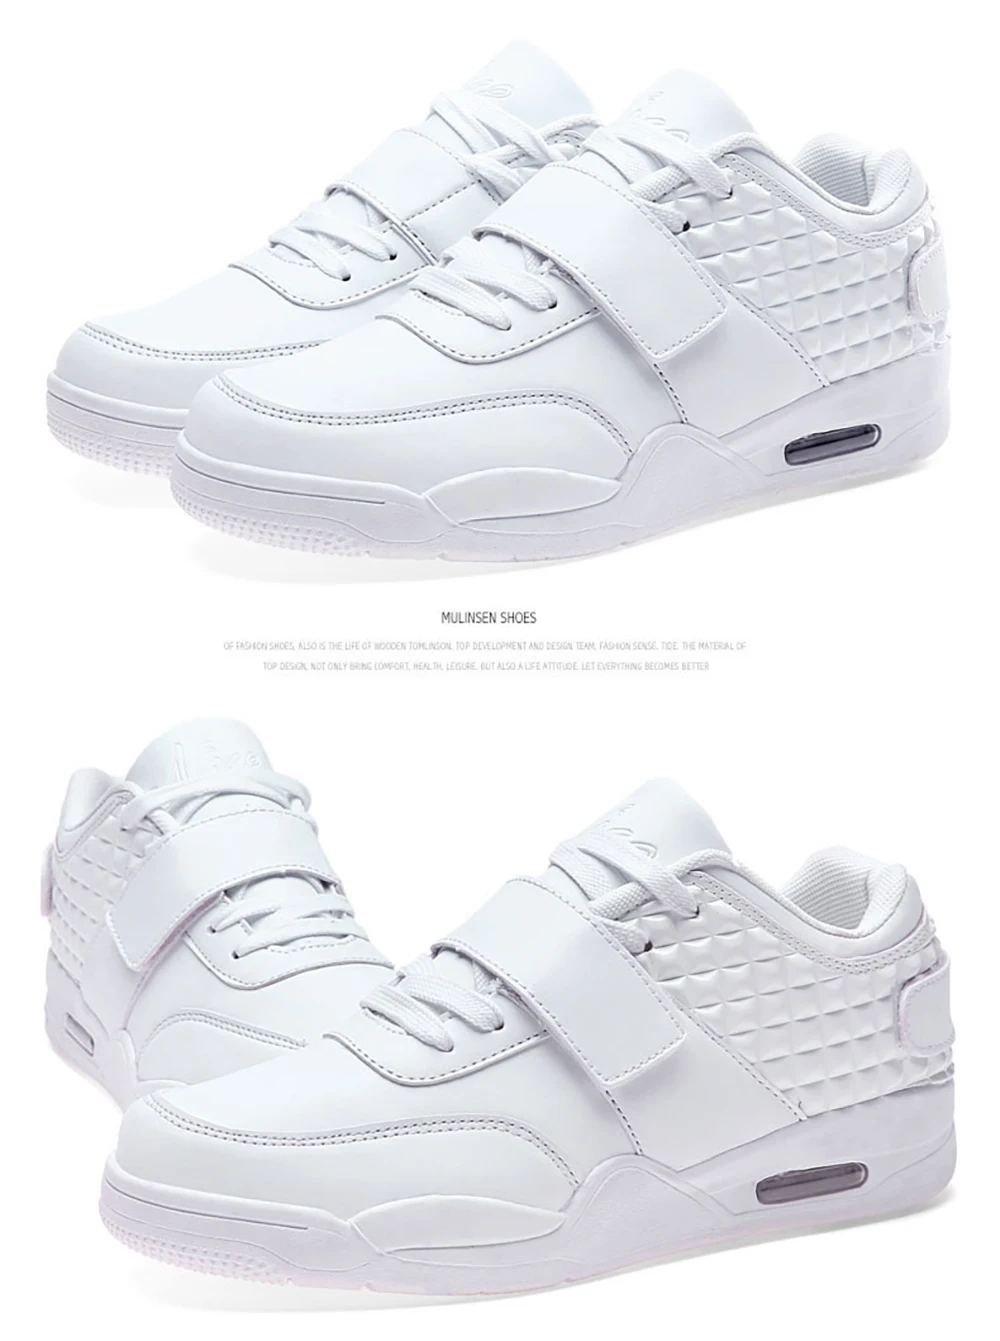 TaoBo/Лидер продаж, высокие баскетбольные кроссовки для мужчин и женщин, дышащая спортивная обувь, светильник, Красные кроссовки, Sapatos de basquetebol